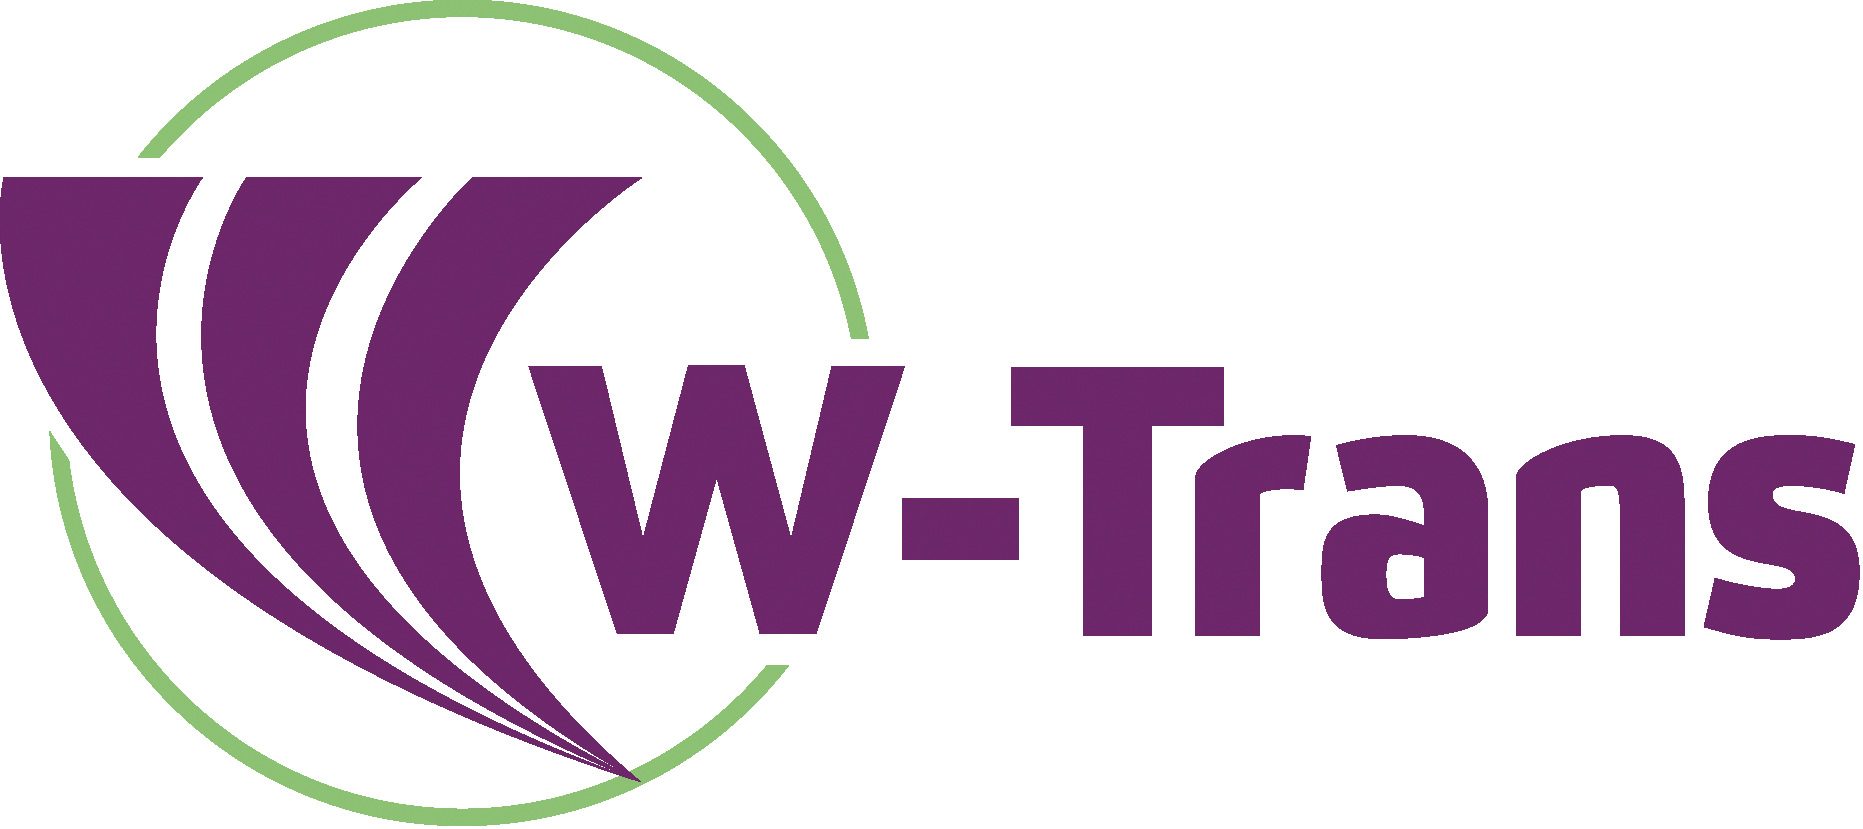 Tran post. Транс лого. Логотип w. Эмблема трансов. КТН транс лого.